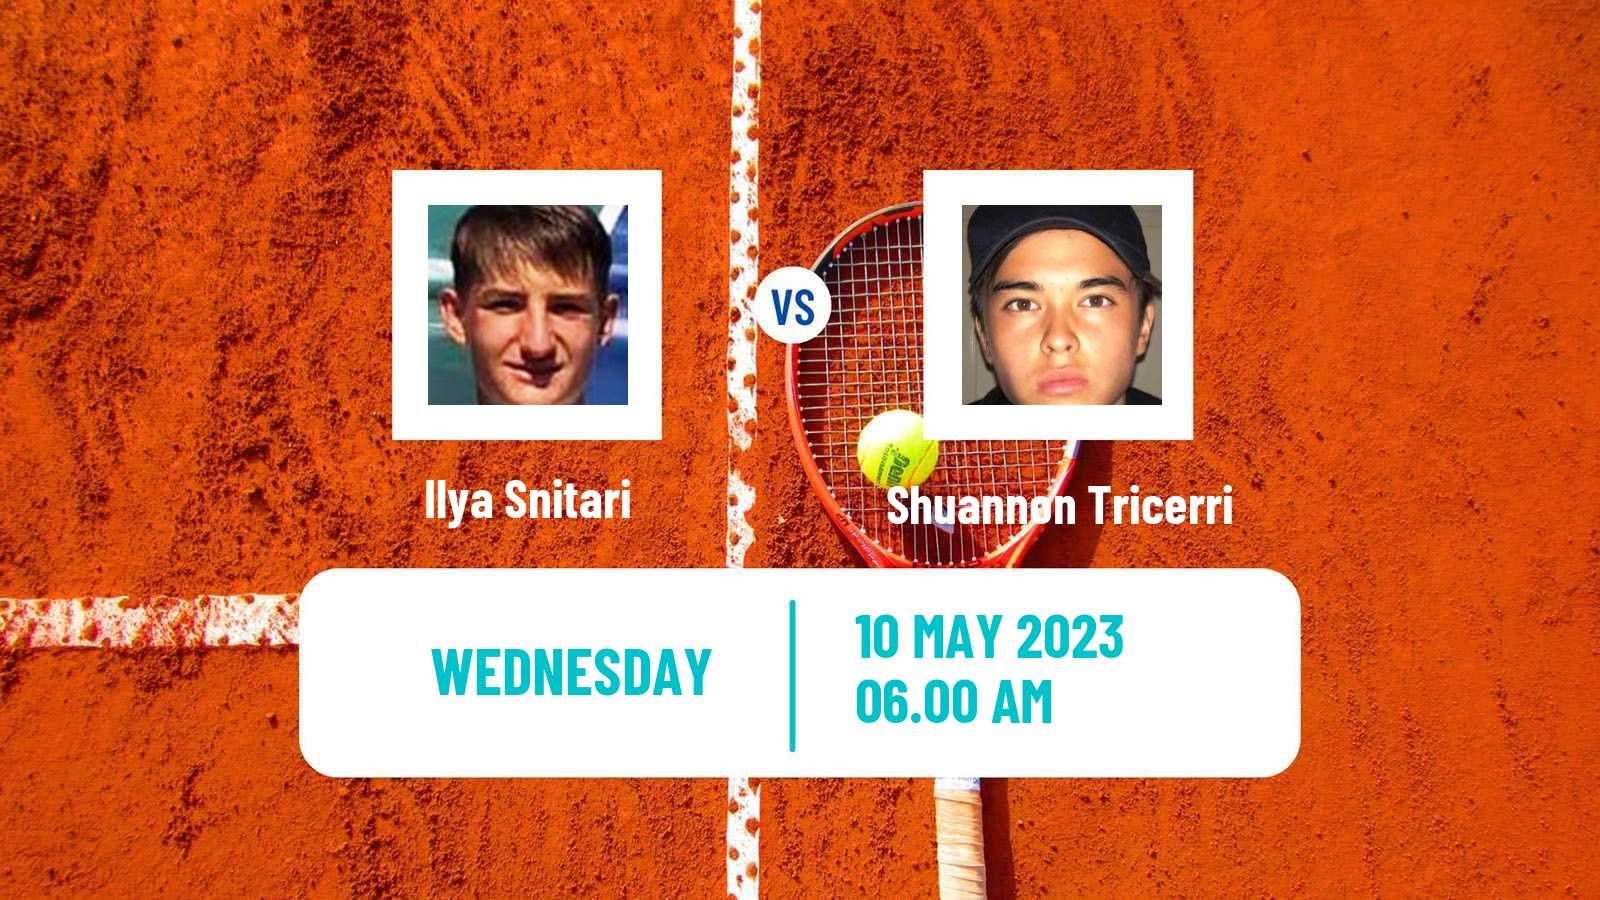 Tennis ITF Tournaments Ilya Snitari - Shuannon Tricerri